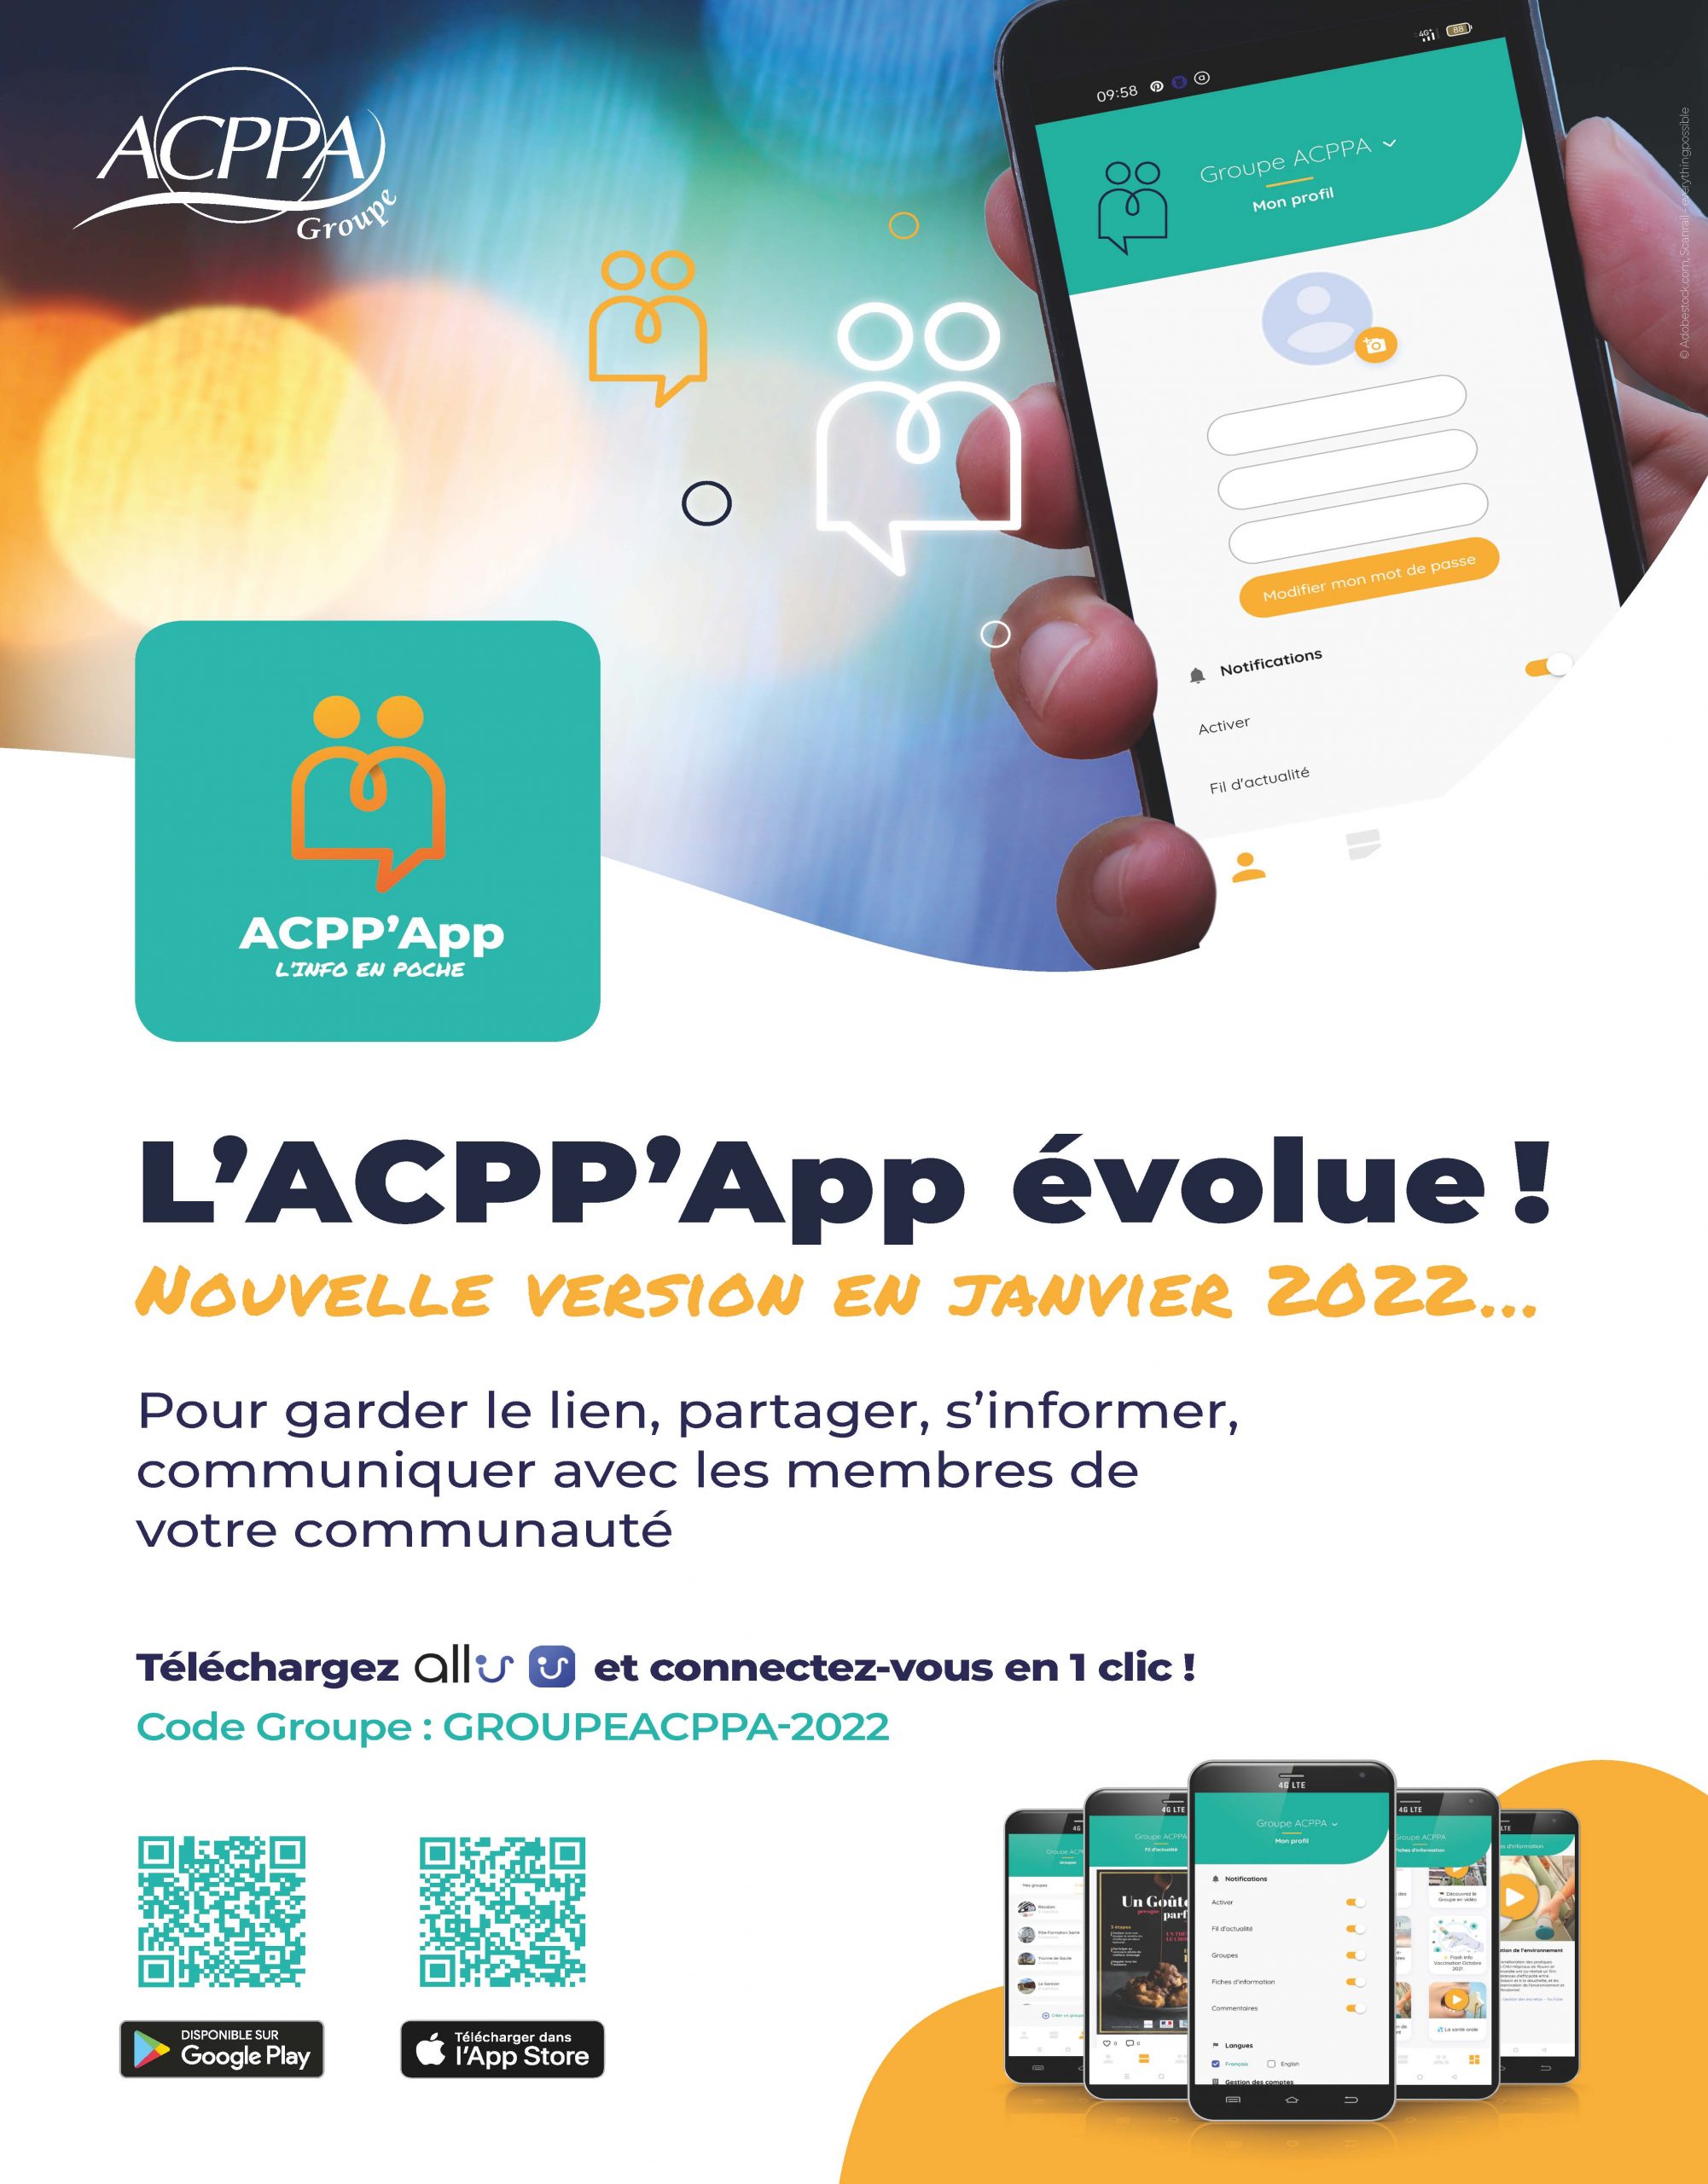 La nouvelle version de l’application ACPP’App a été lancée !